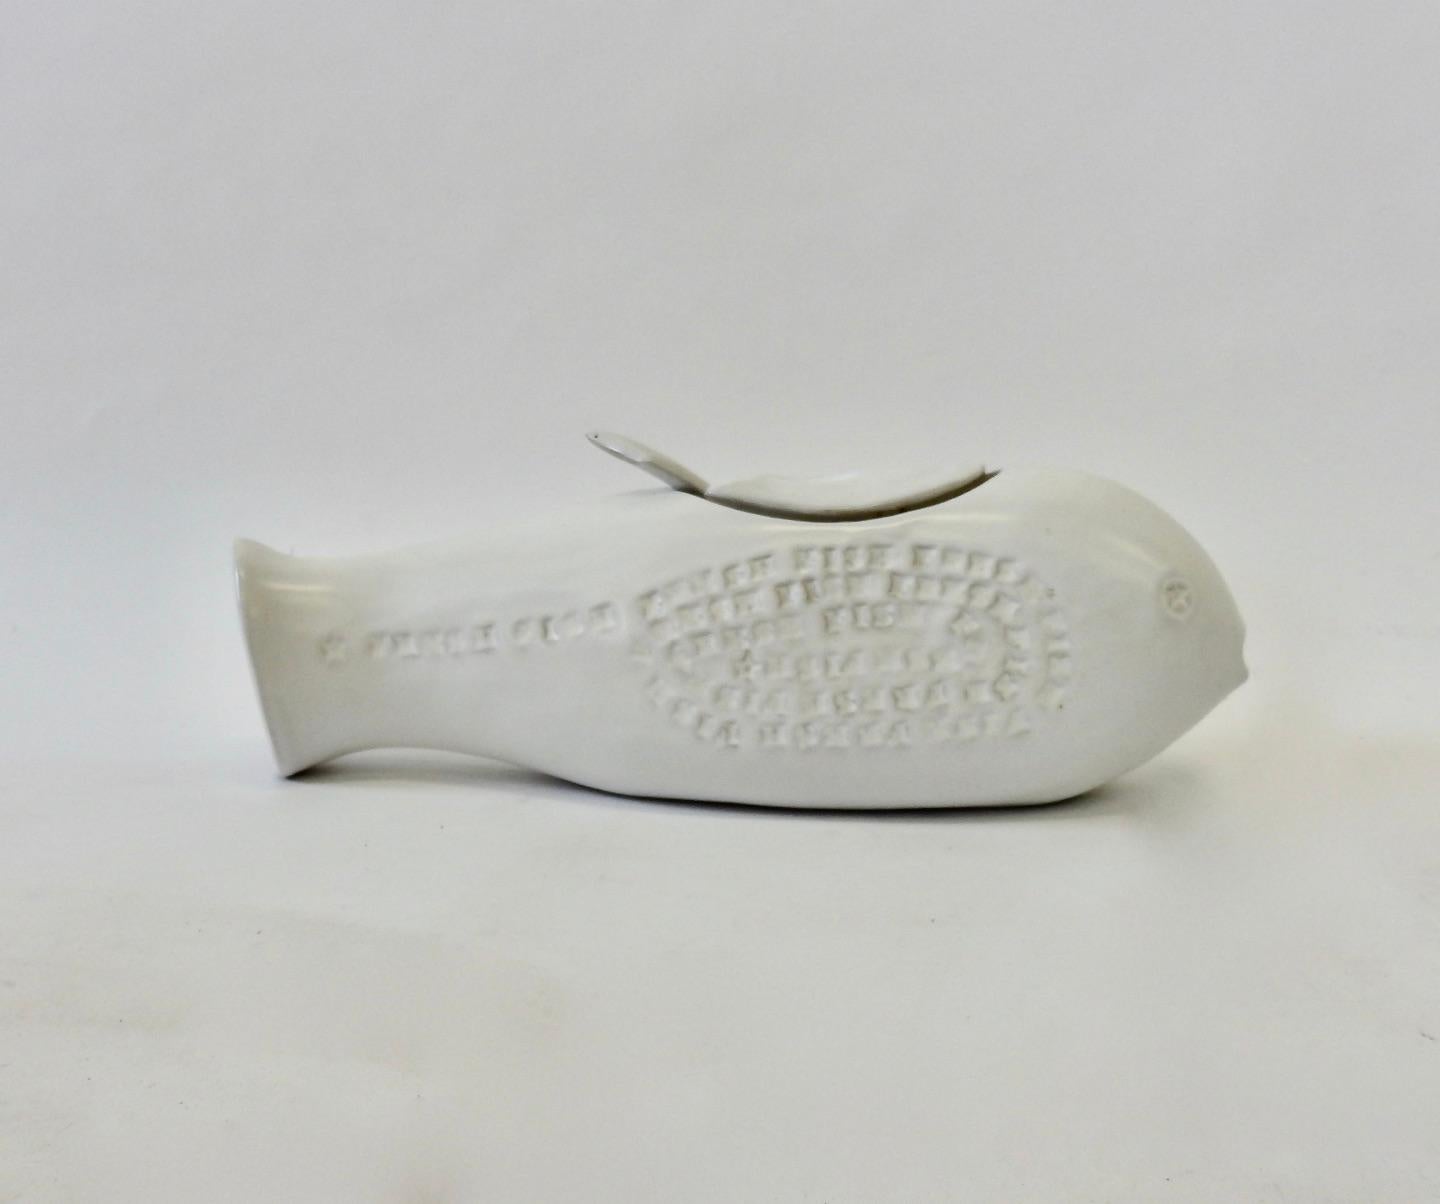 Rare soupière en forme de poisson de la poterie Bennington avec louche originale, le tout en glaçure blanche mate.